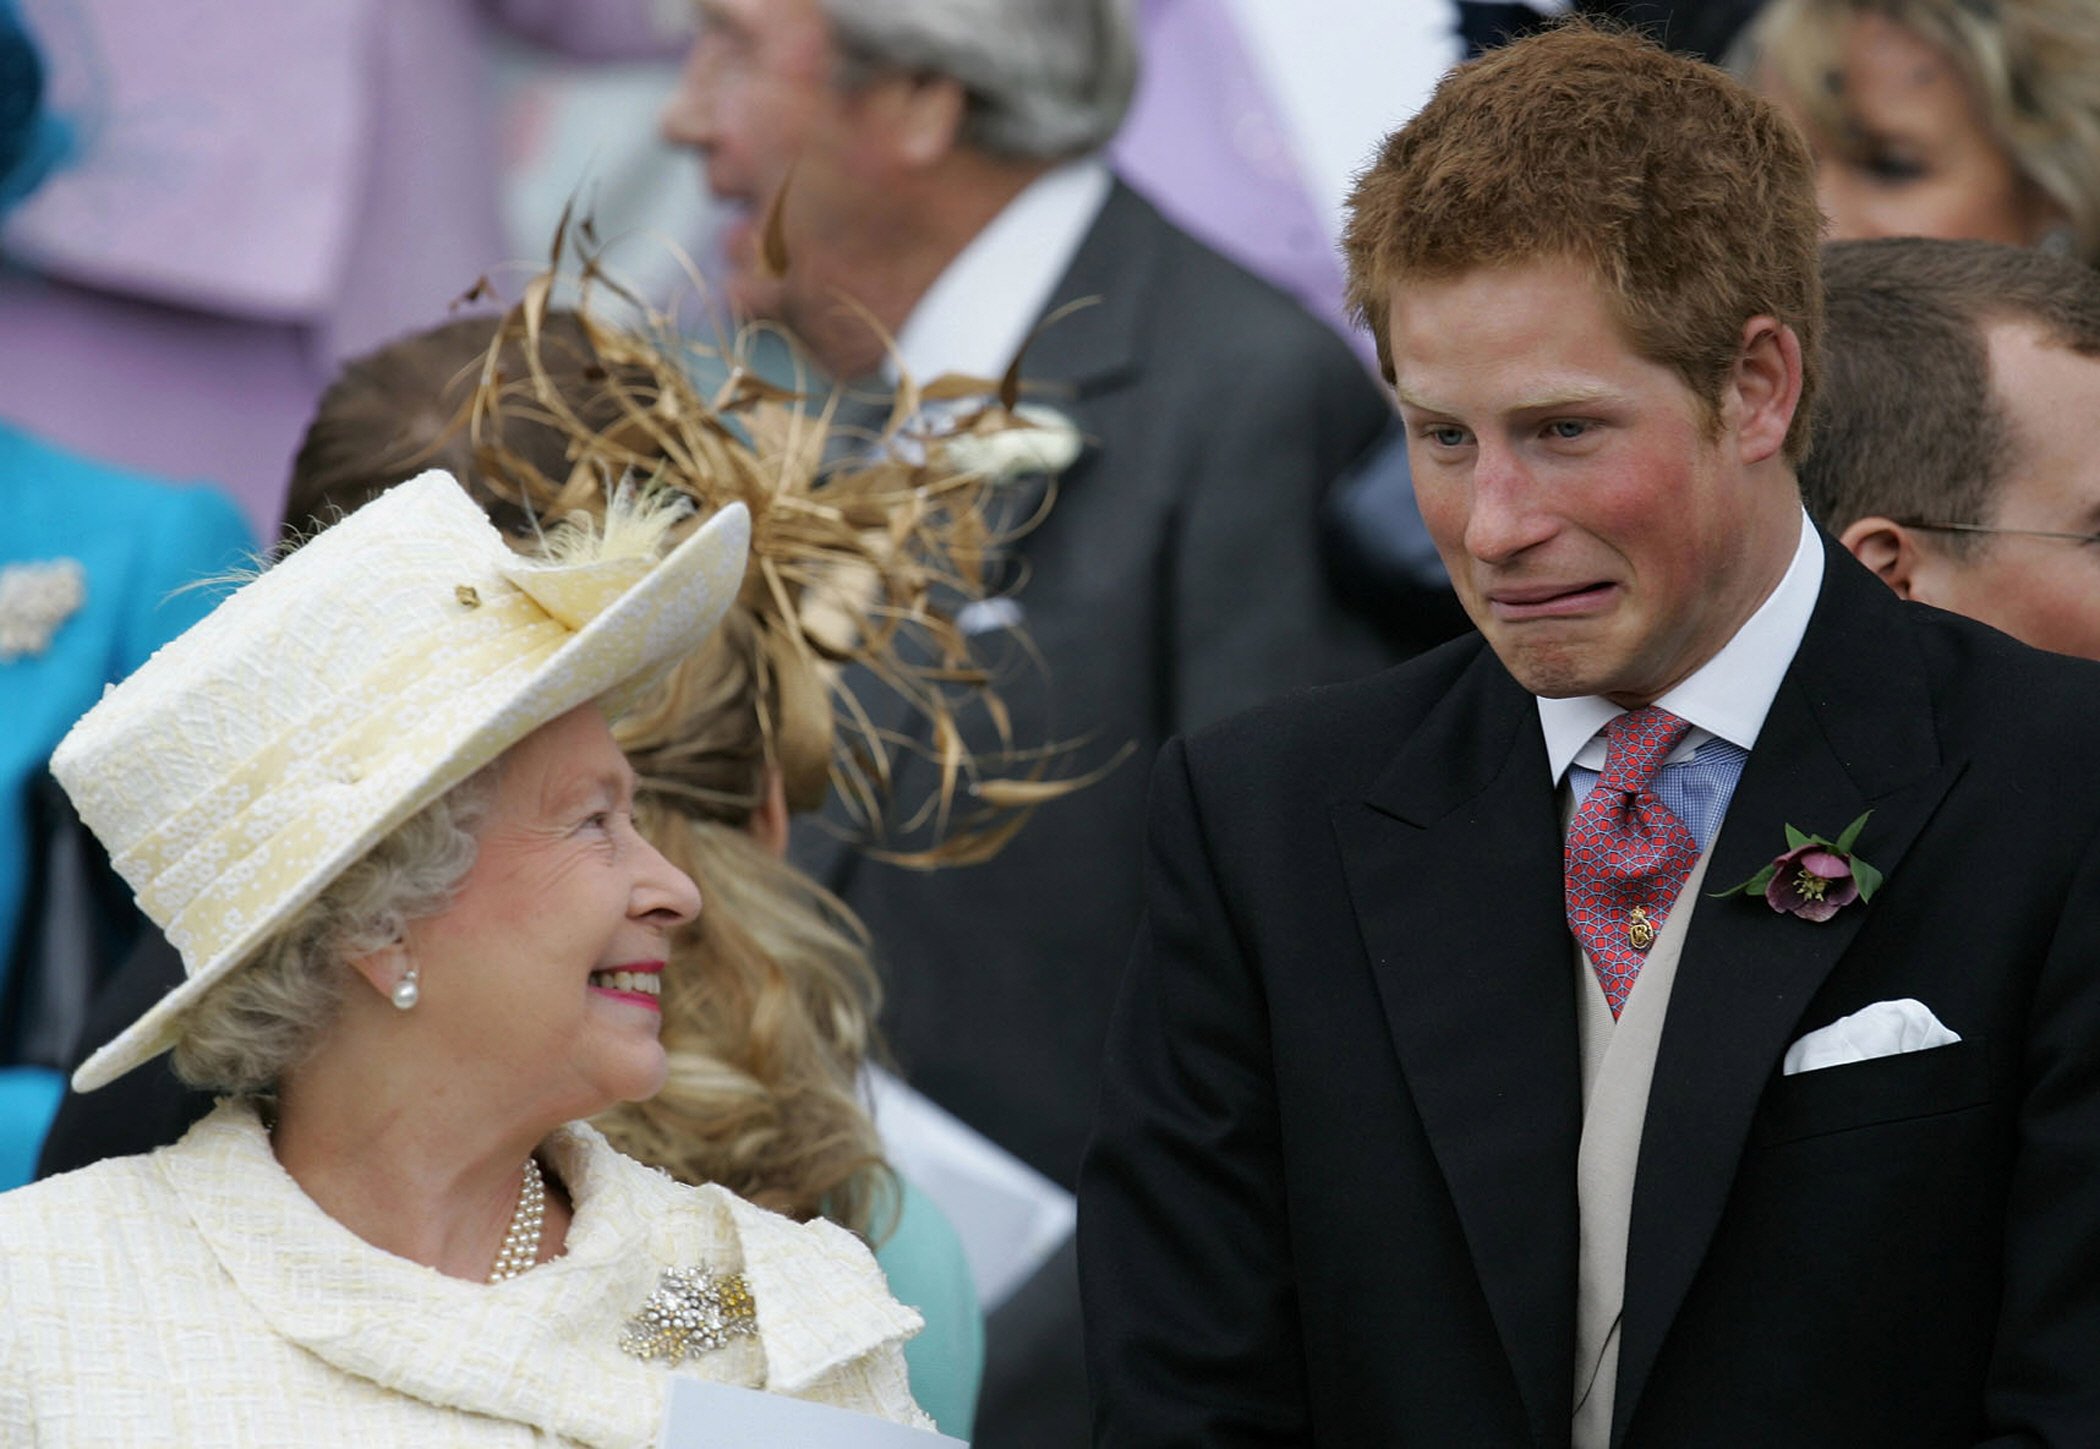 La reina Elizabeth II y el príncipe Harry compartiendo una broma mientras ven al príncipe Charles y a Camilla, duquesa de Cornualles, salir de la capilla de St. George en Windsor después de su bendición matrimonial, 09 de abril de 2005. | Foto: Getty Images